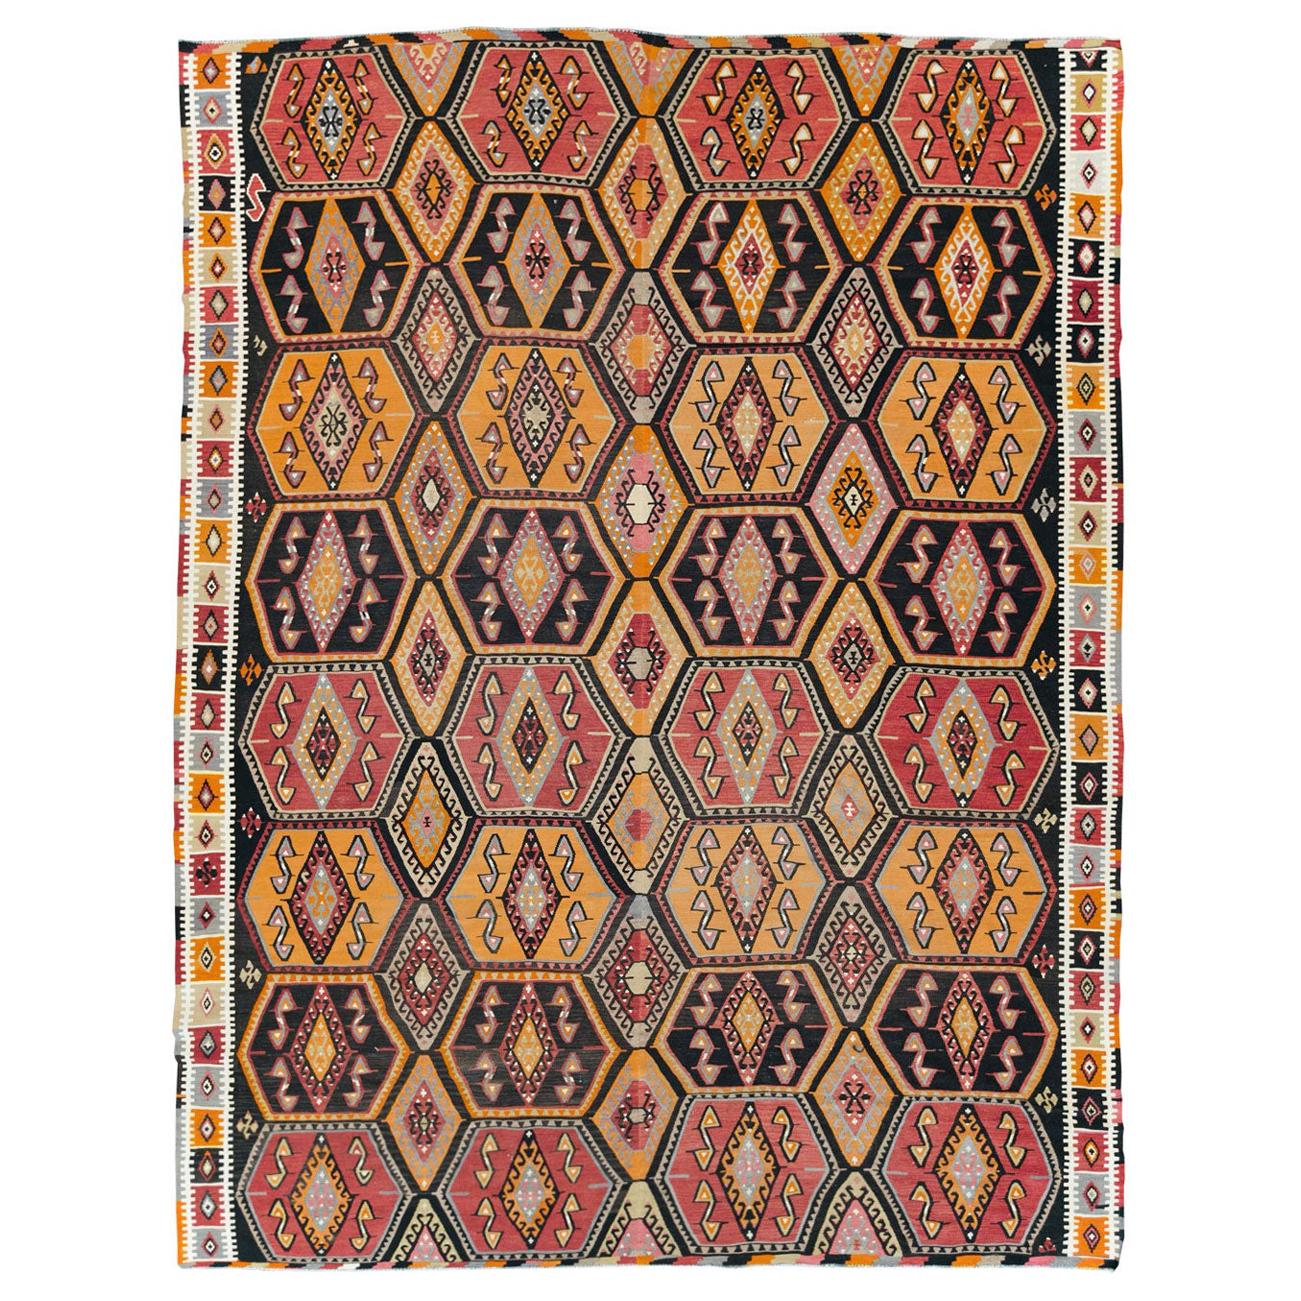 Boho Chic Mid-20th Century Handmade Turkish Flatweave Kilim Large Room Size Rug